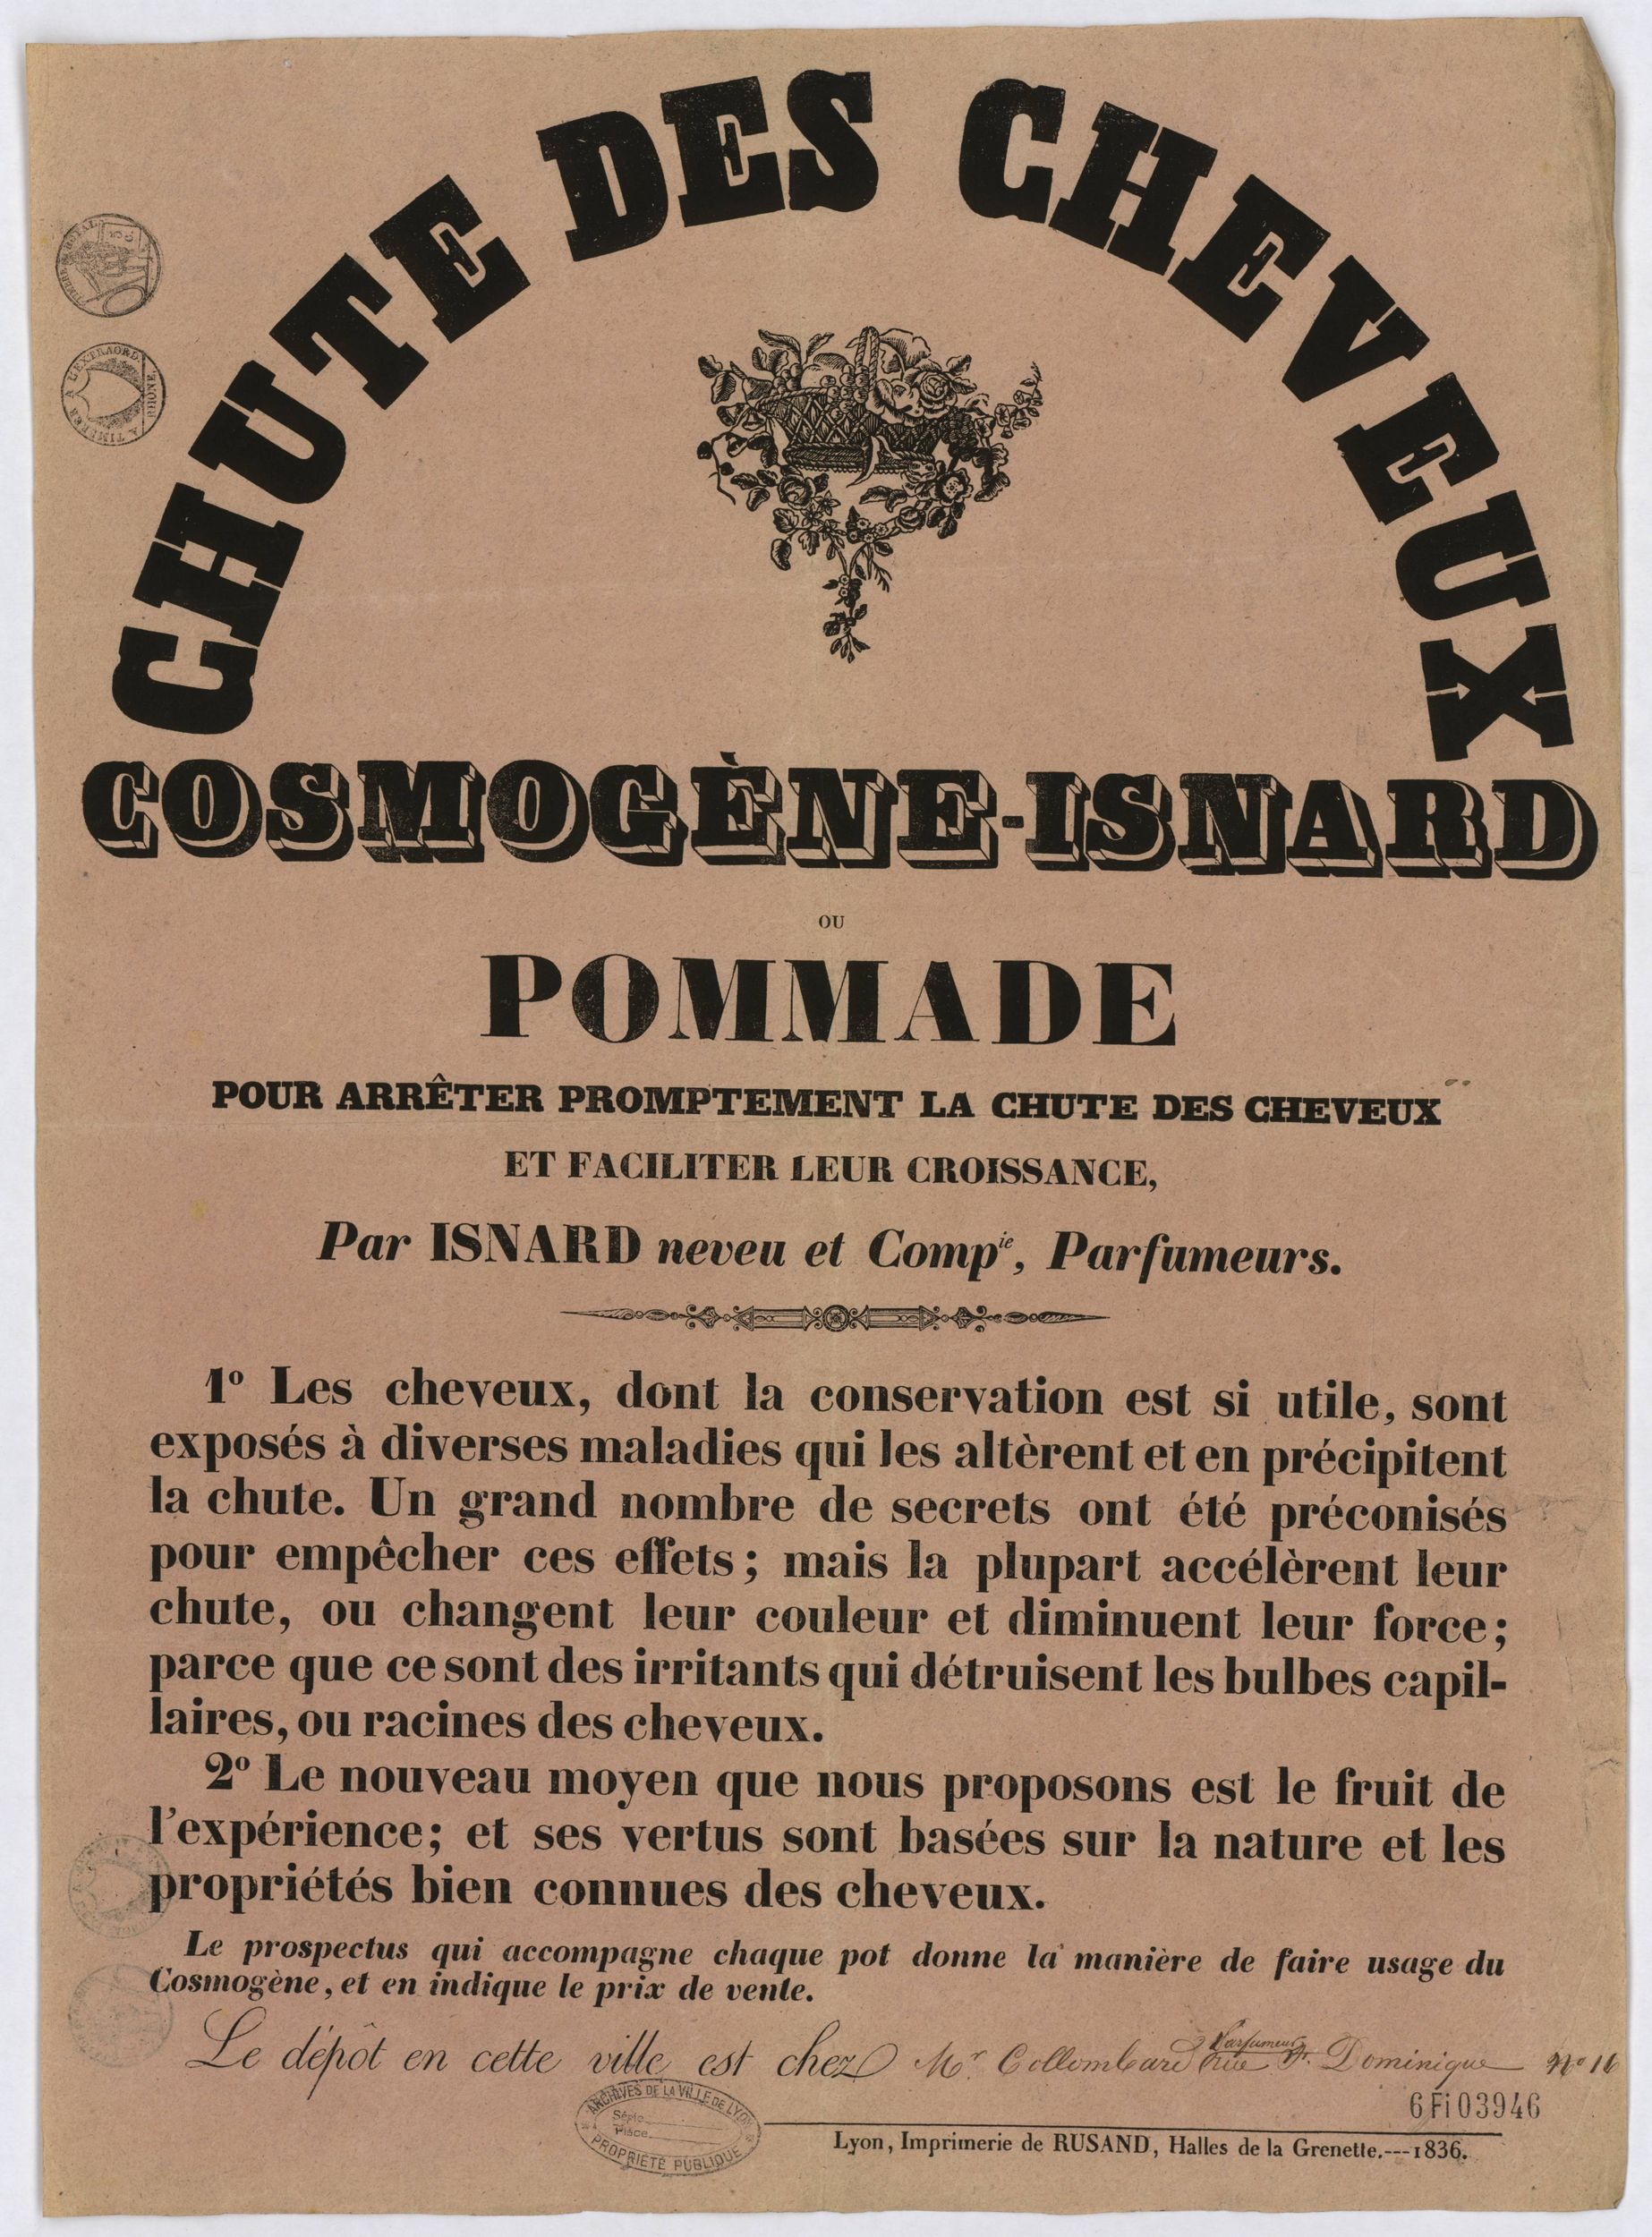 Chute des cheveux - Cosmogène Isnard, pommade pour arrêter promptement la chute des cheveux : affiche publicitaire NB (1836, cote : 6FI/3946)